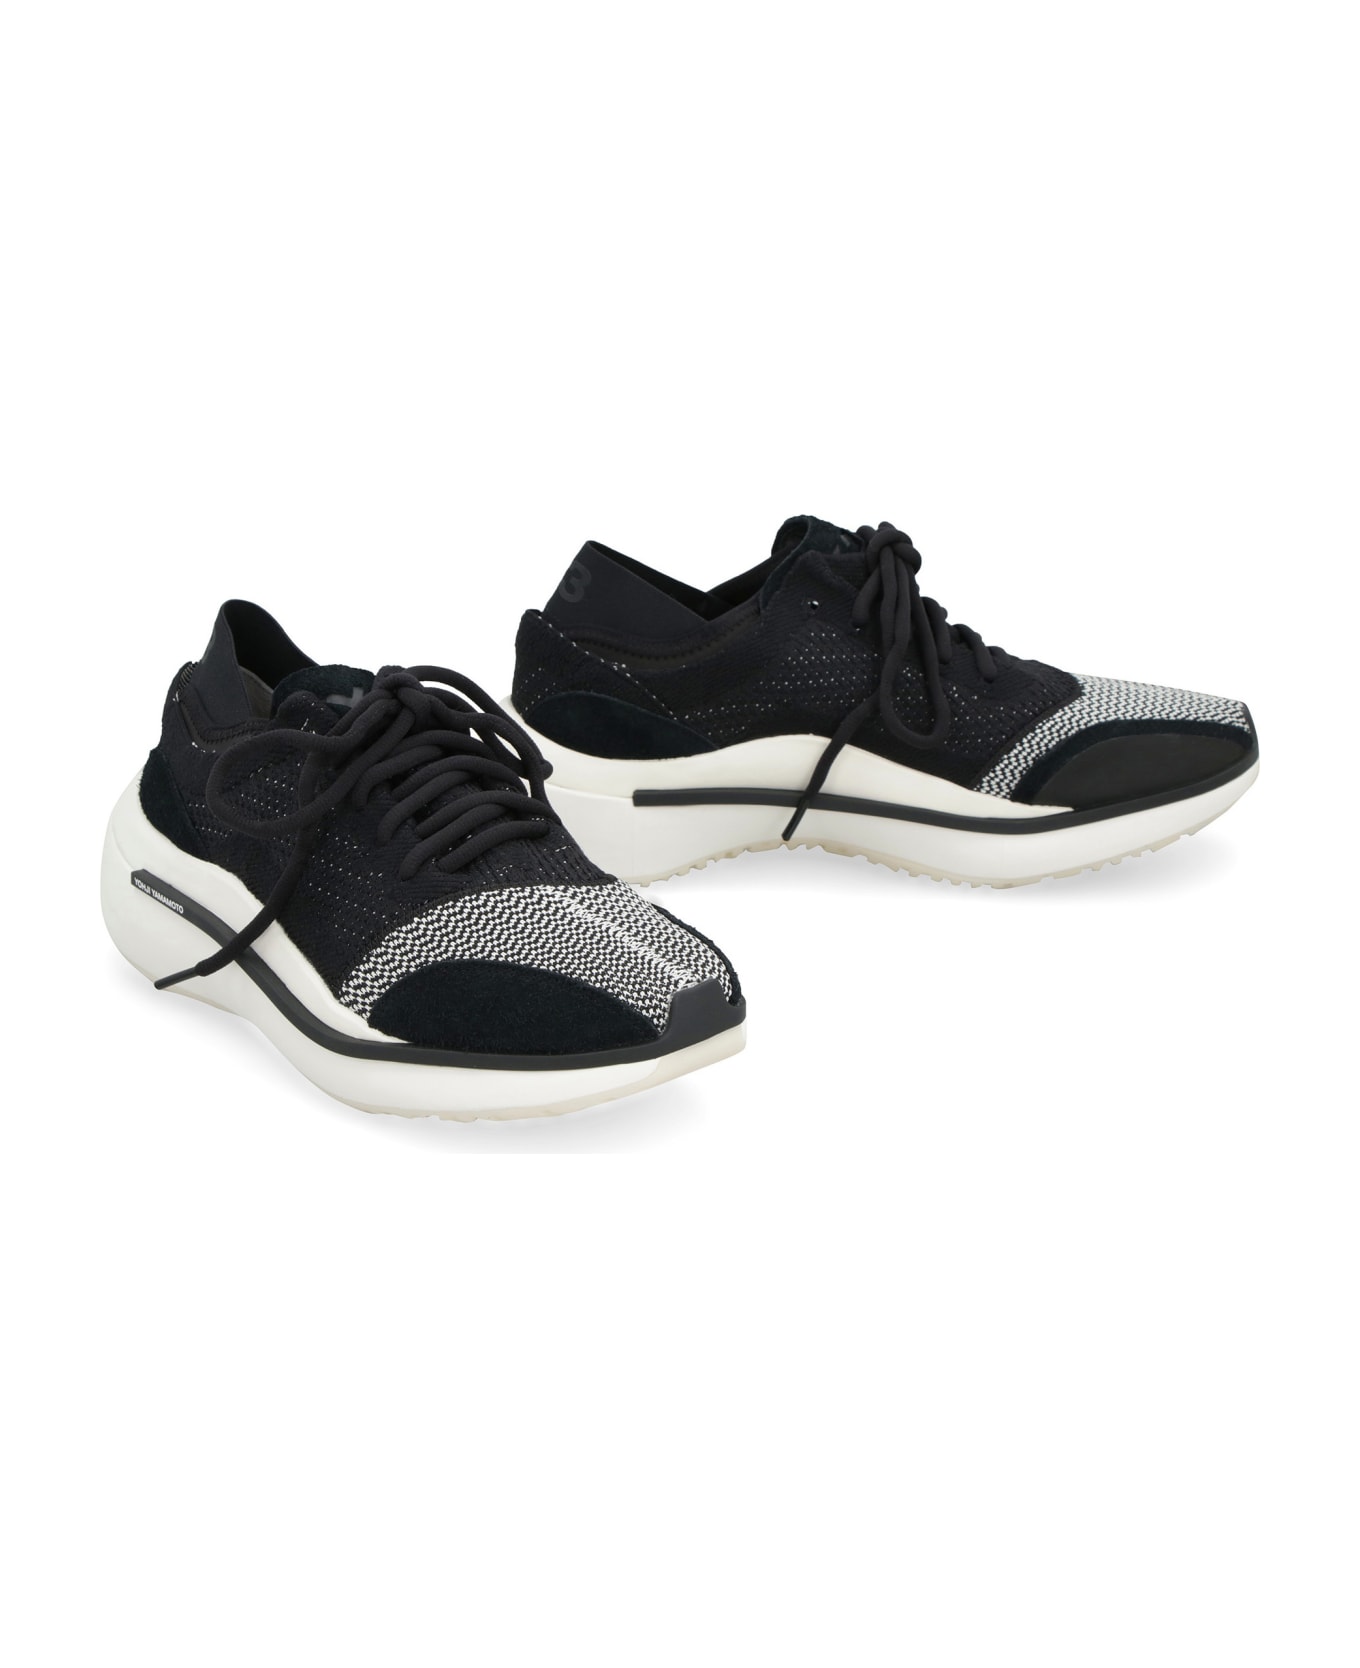 Y-3 Qisan Knit Sneakers - black